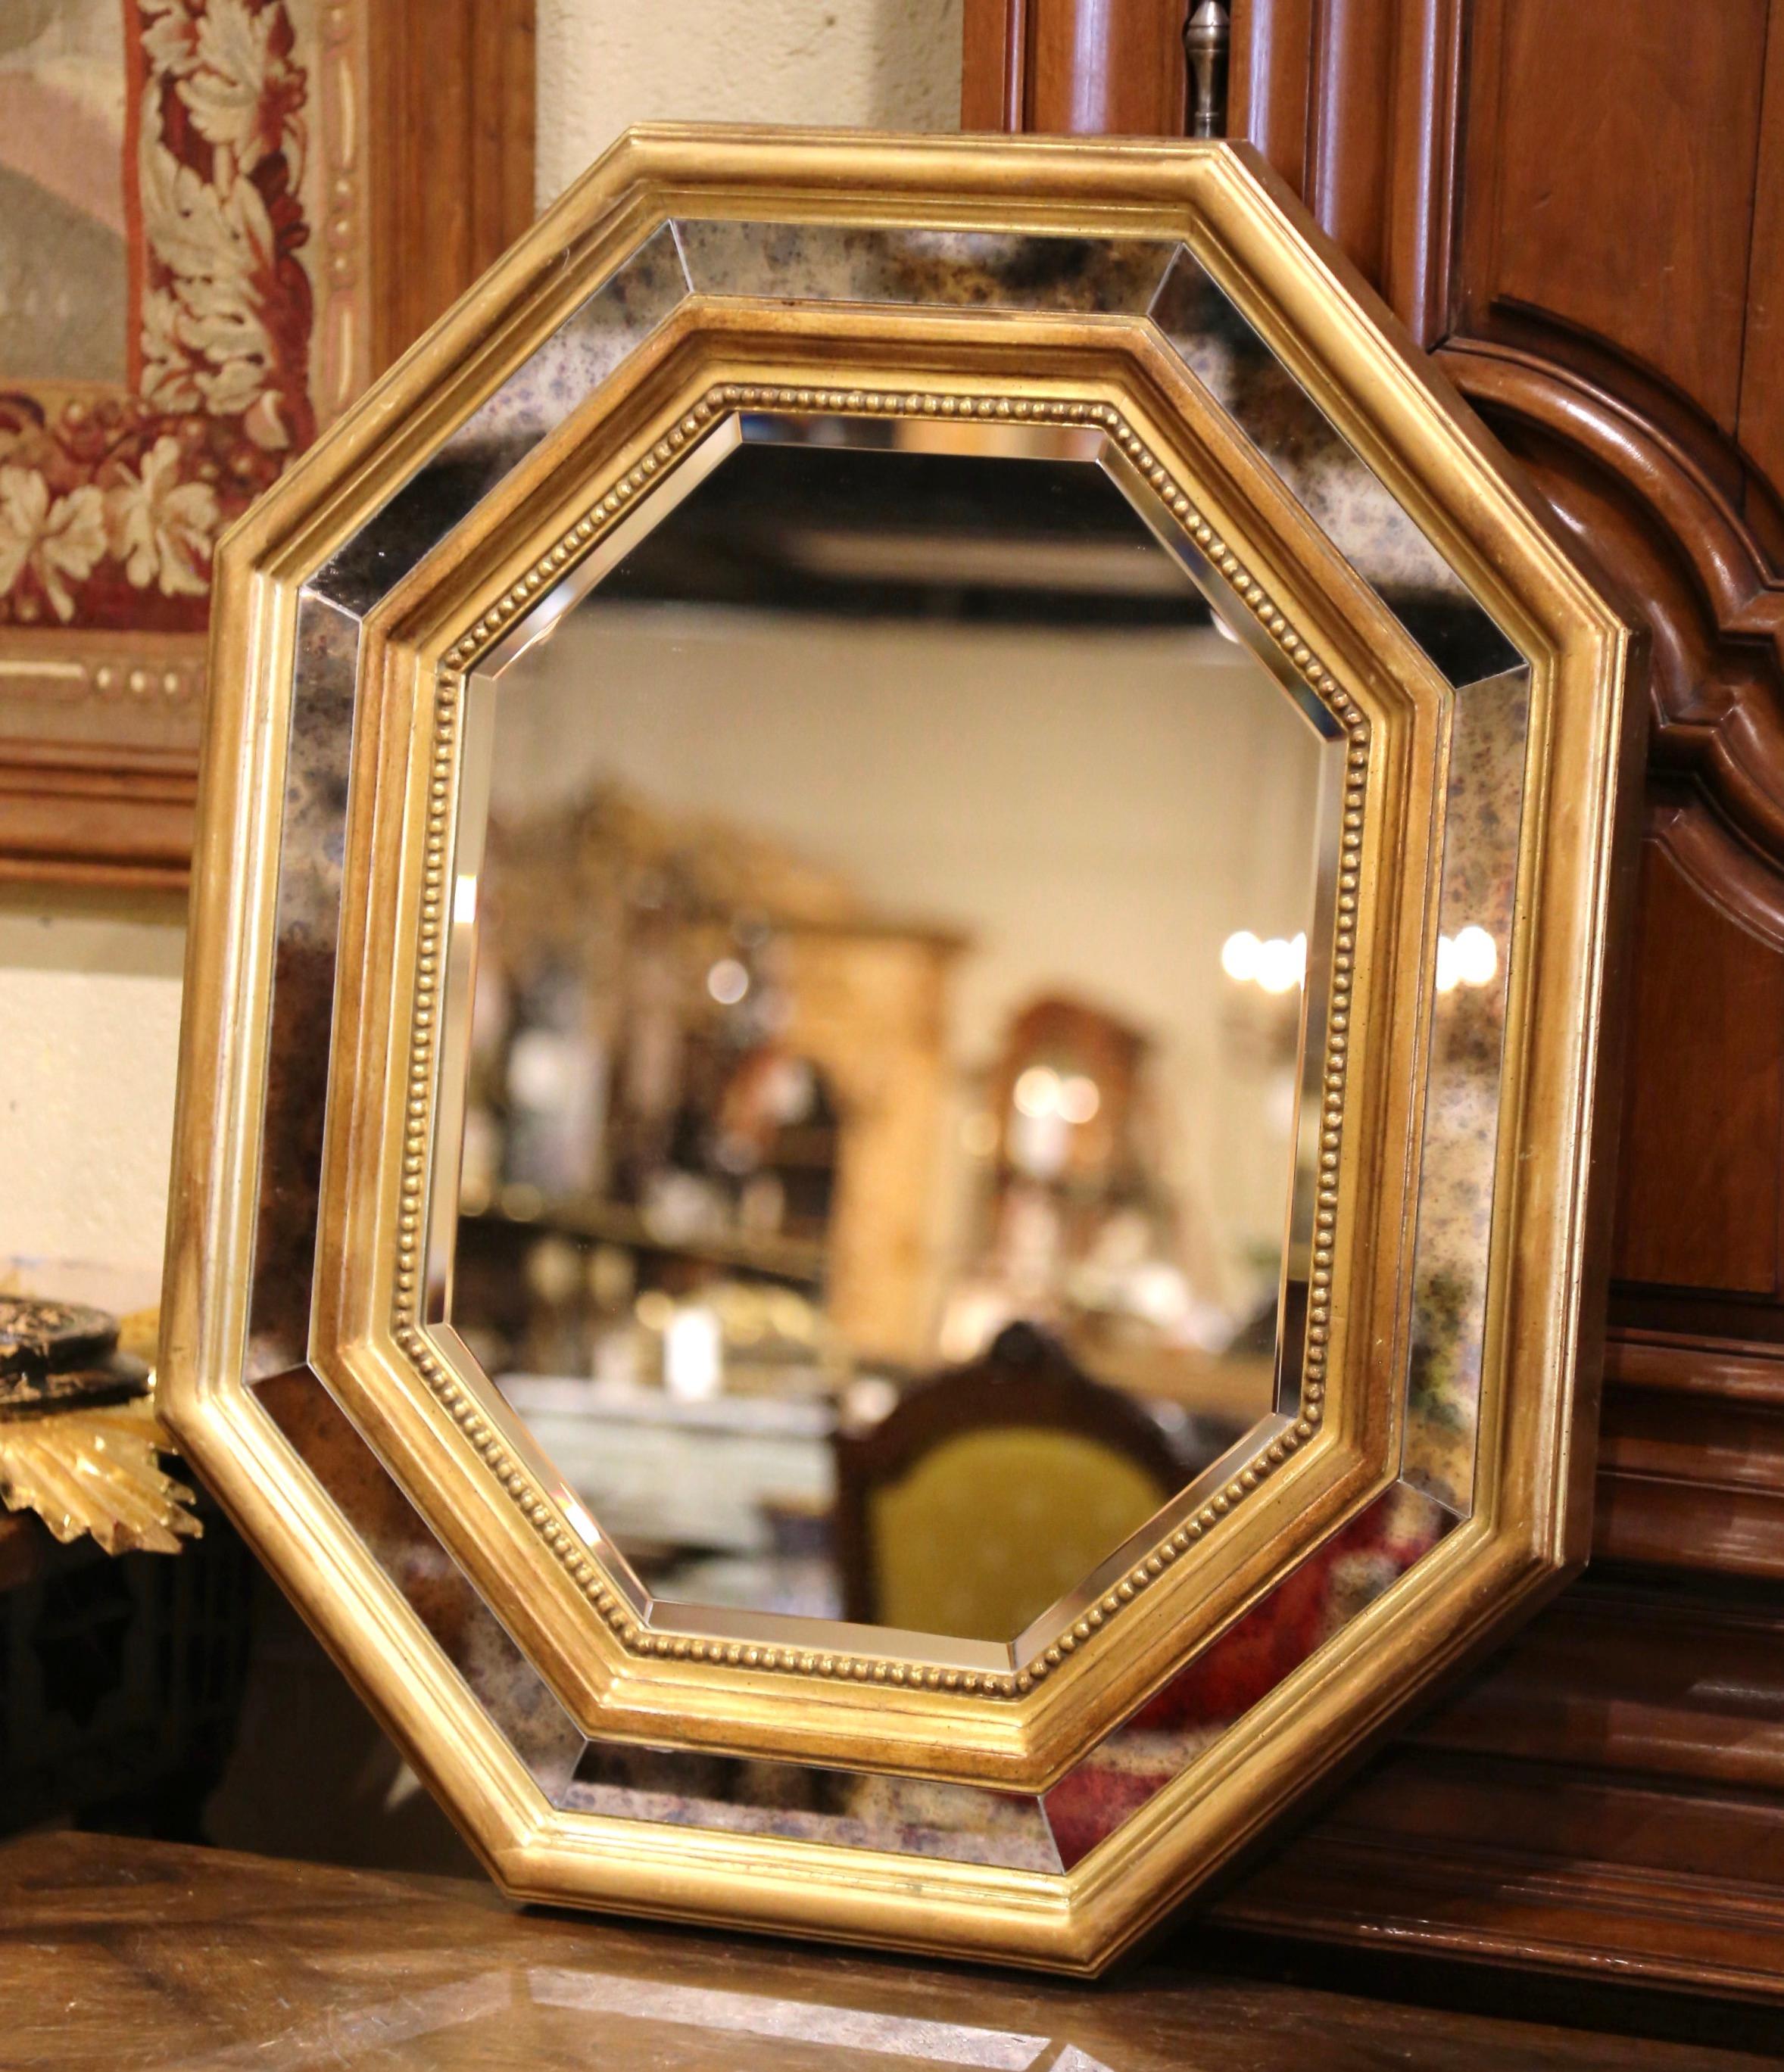 Dekorieren Sie ein Badezimmer oder den Eingangsbereich mit diesem eleganten Wandspiegel. Der achteckige Spiegel wurde um 1970 in Frankreich hergestellt und besteht aus acht Rauchglasscheiben, die durch vergoldete Holzwände voneinander getrennt sind.